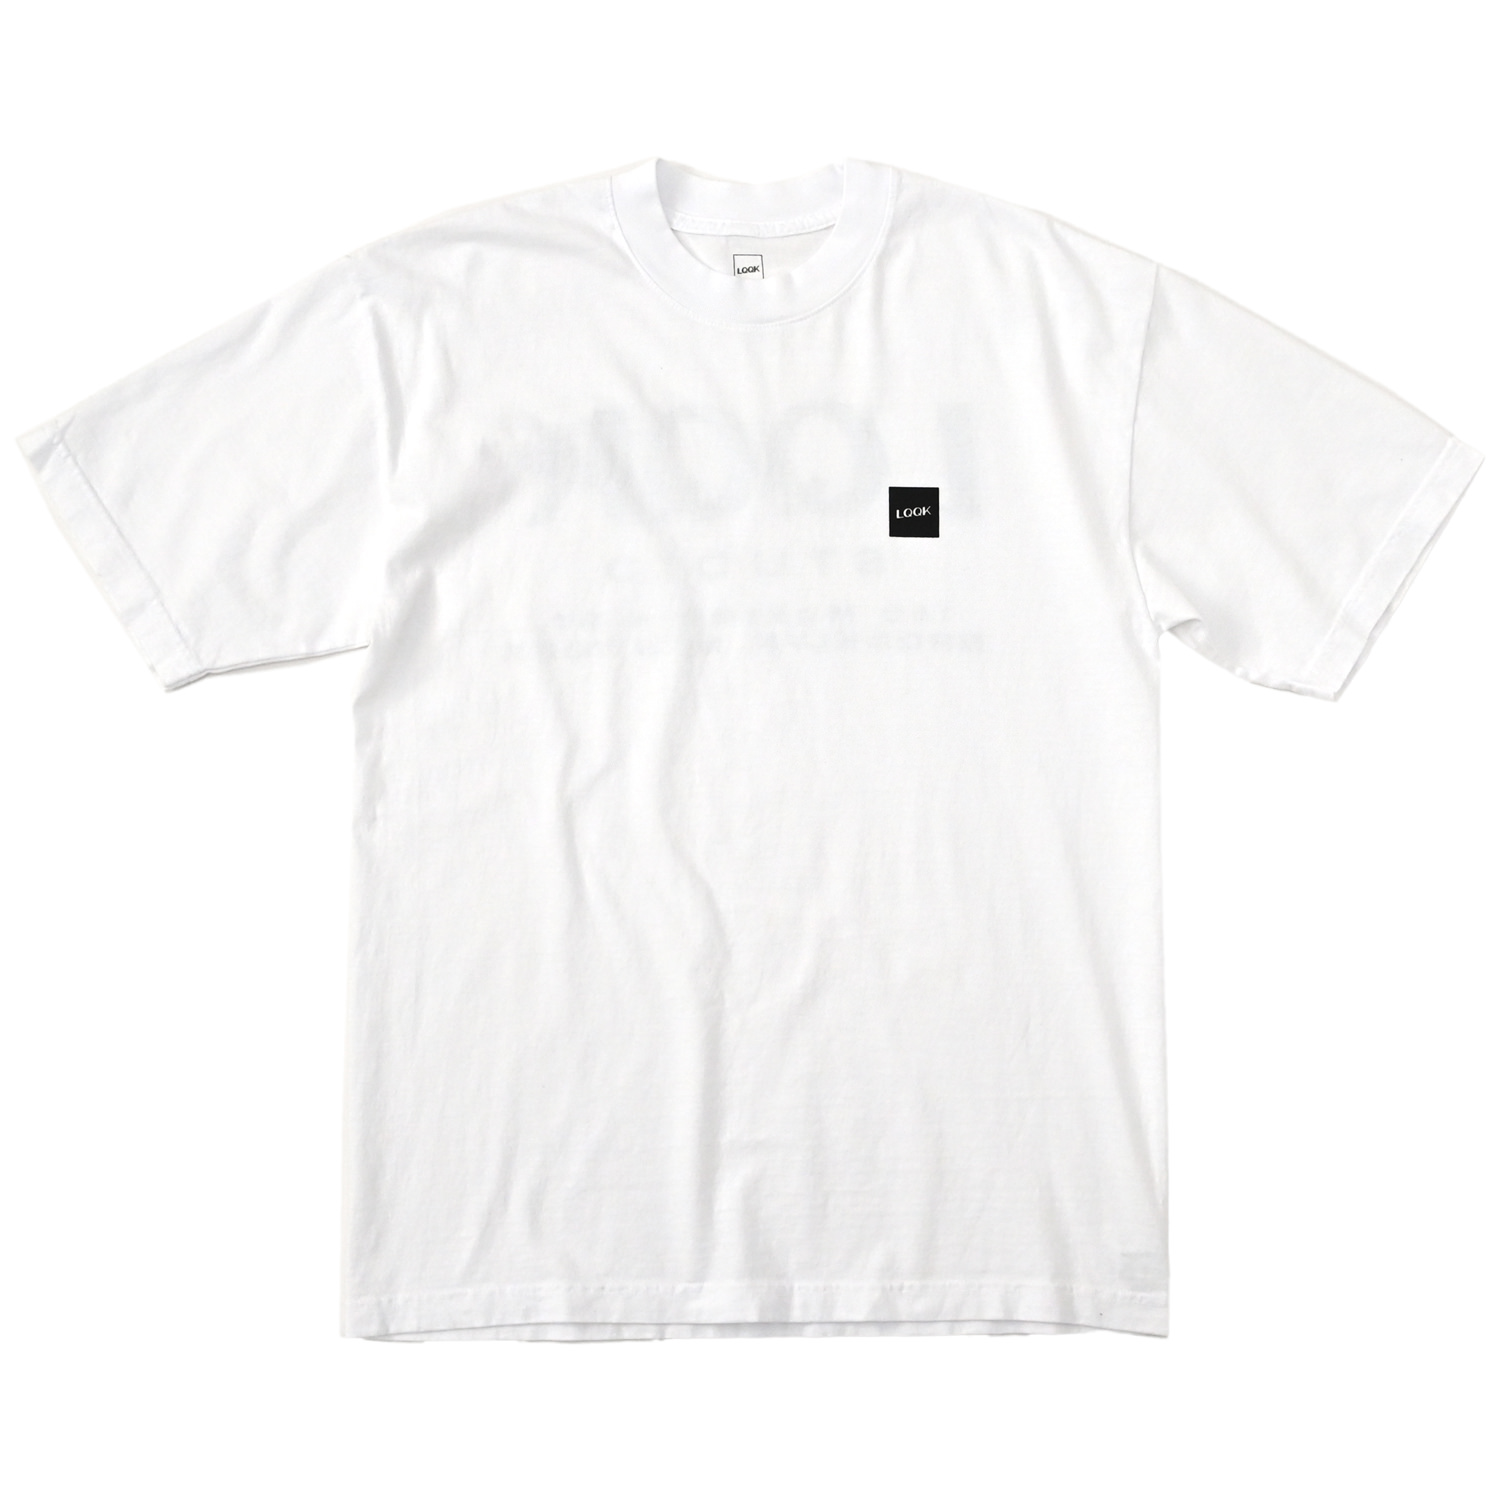 LQQK STUDIO SHOP SHIRTS S/S TEE White XL - Tシャツ/カットソー(半袖